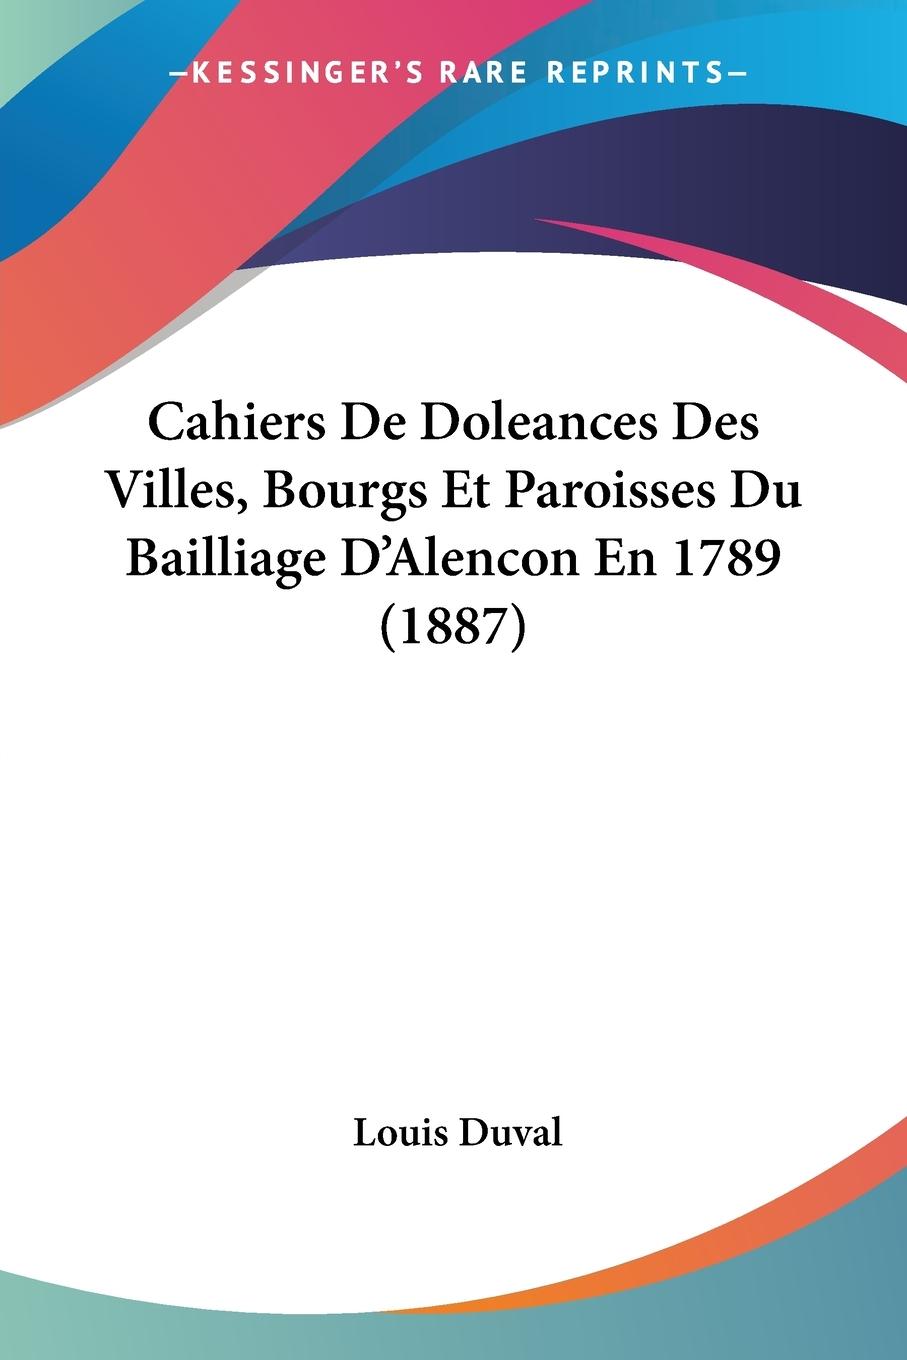 Cahiers De Doleances Des Villes, Bourgs Et Paroisses Du Bailliage D Alencon En 1789 (1887) - Duval, Louis